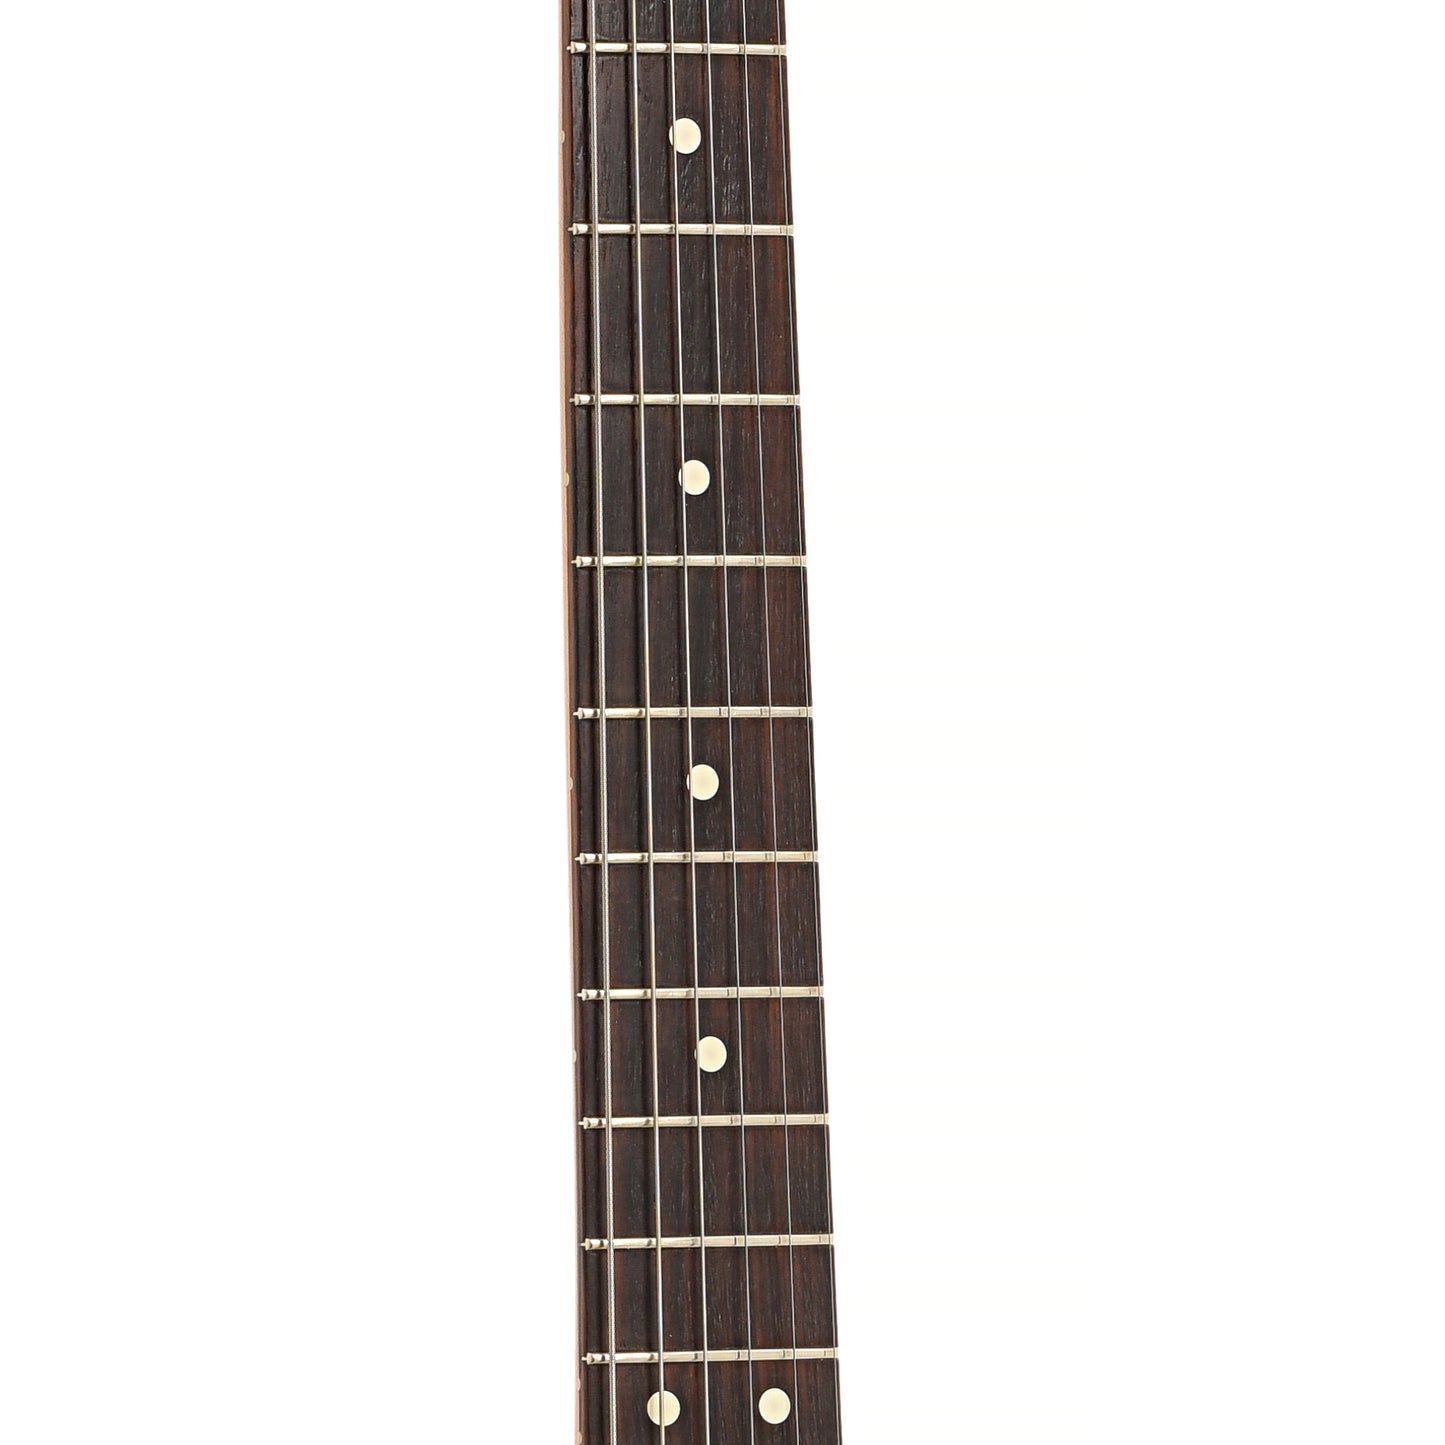 Fretboard of Fender Stratocaster 70s Reissue